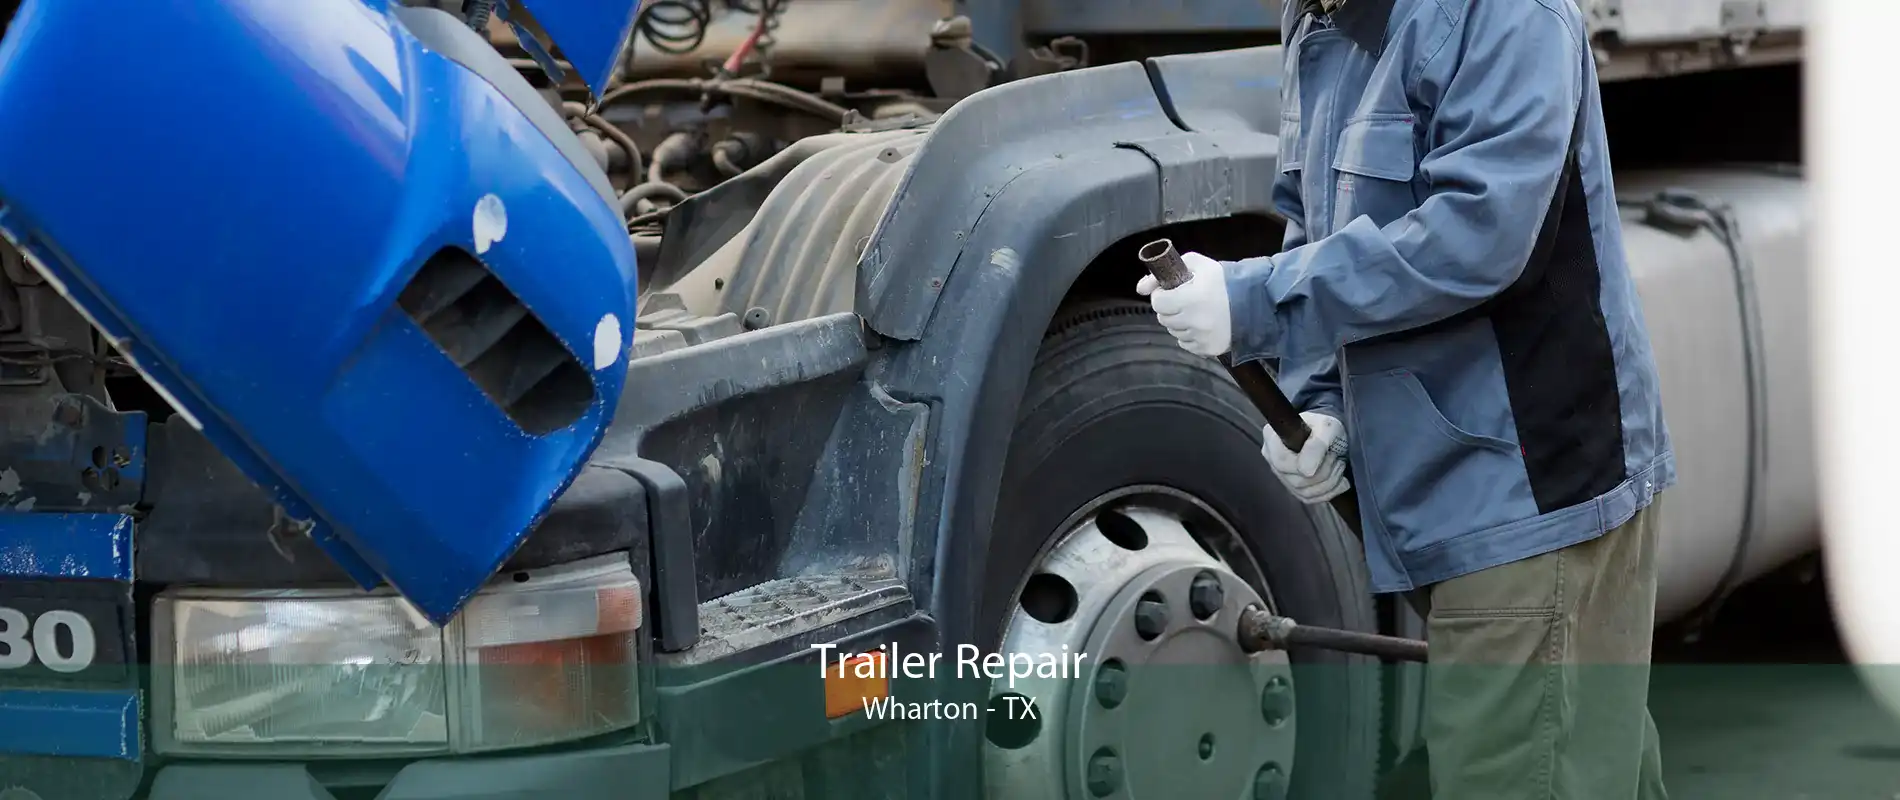 Trailer Repair Wharton - TX